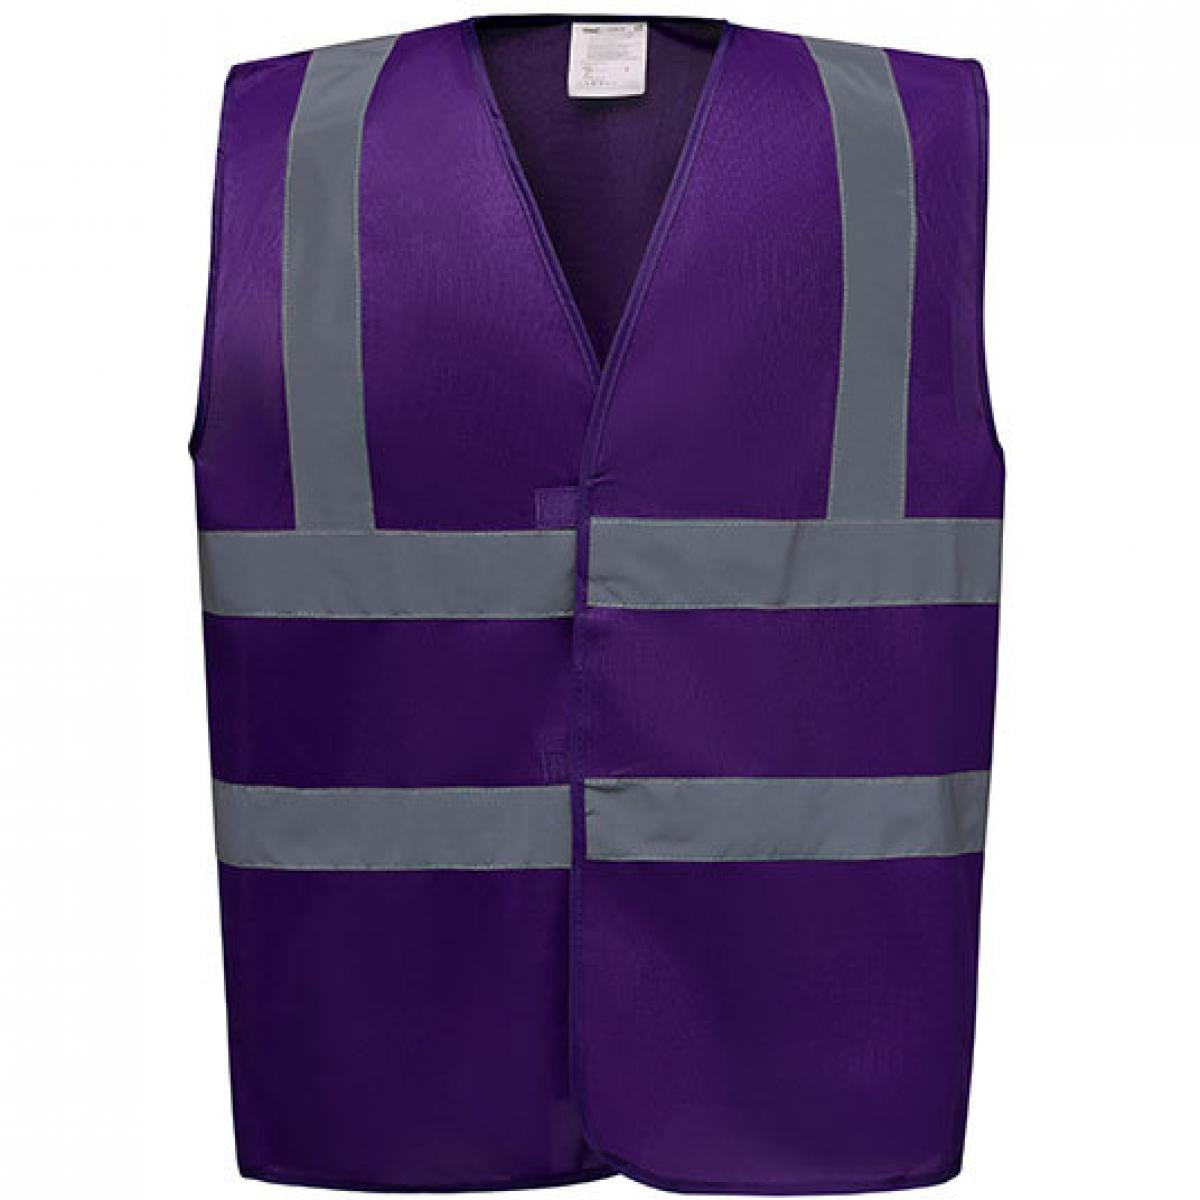 Hersteller: YOKO Herstellernummer: HVW100 Artikelbezeichnung: Sicherheitsweste High Visibility 2 Bands & Braces Waistcoat Farbe: Purple